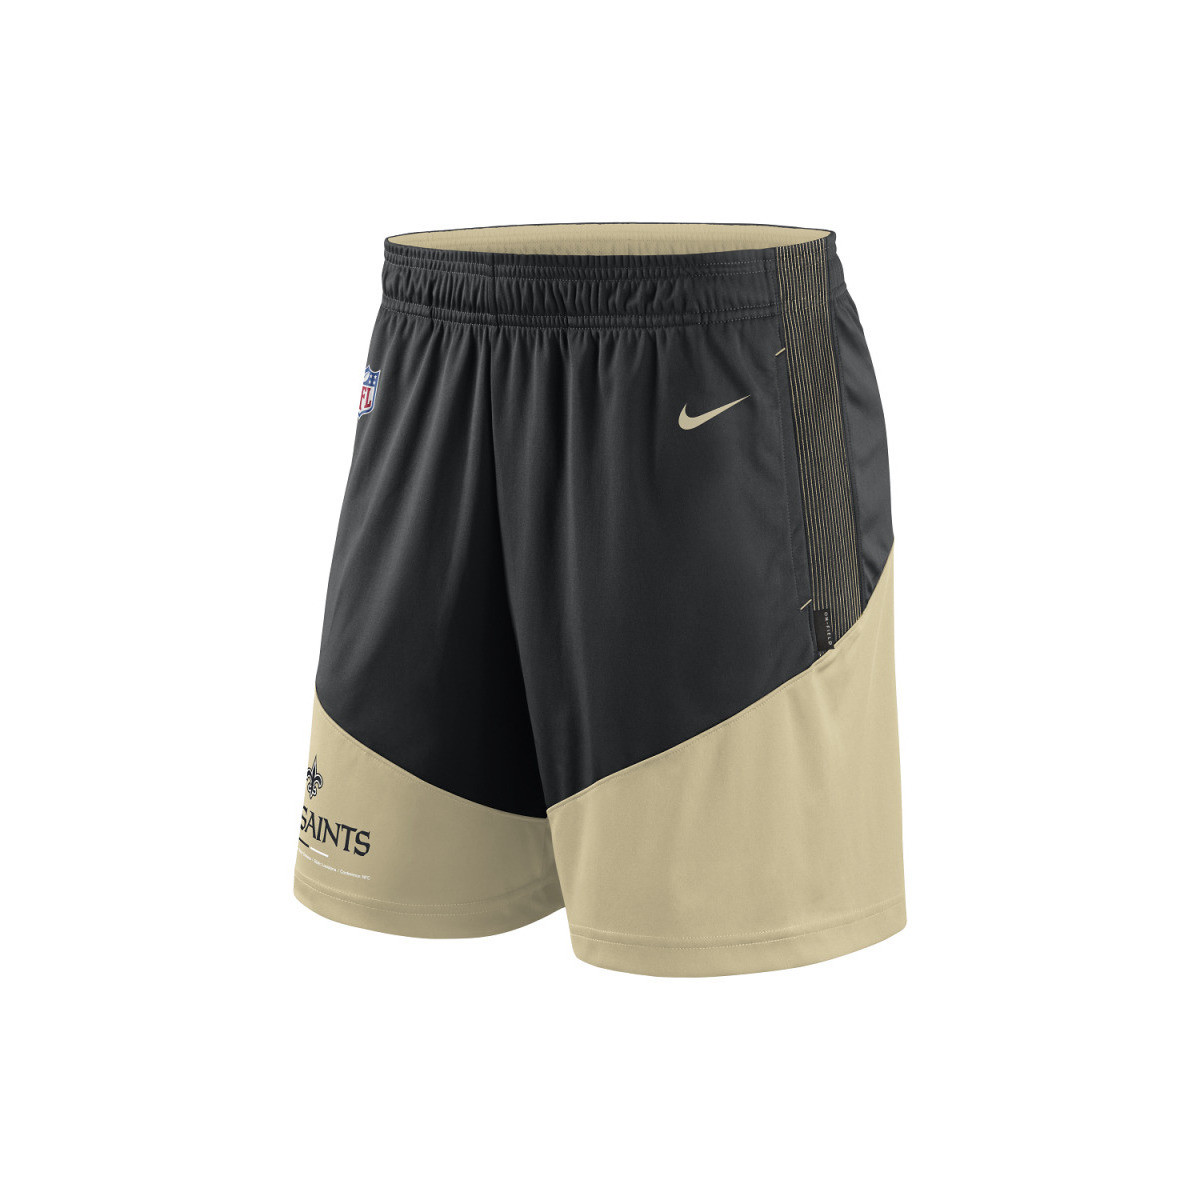 Vêtements Shorts / Bermudas Nike Short NFL New Orleans Saints N Multicolore